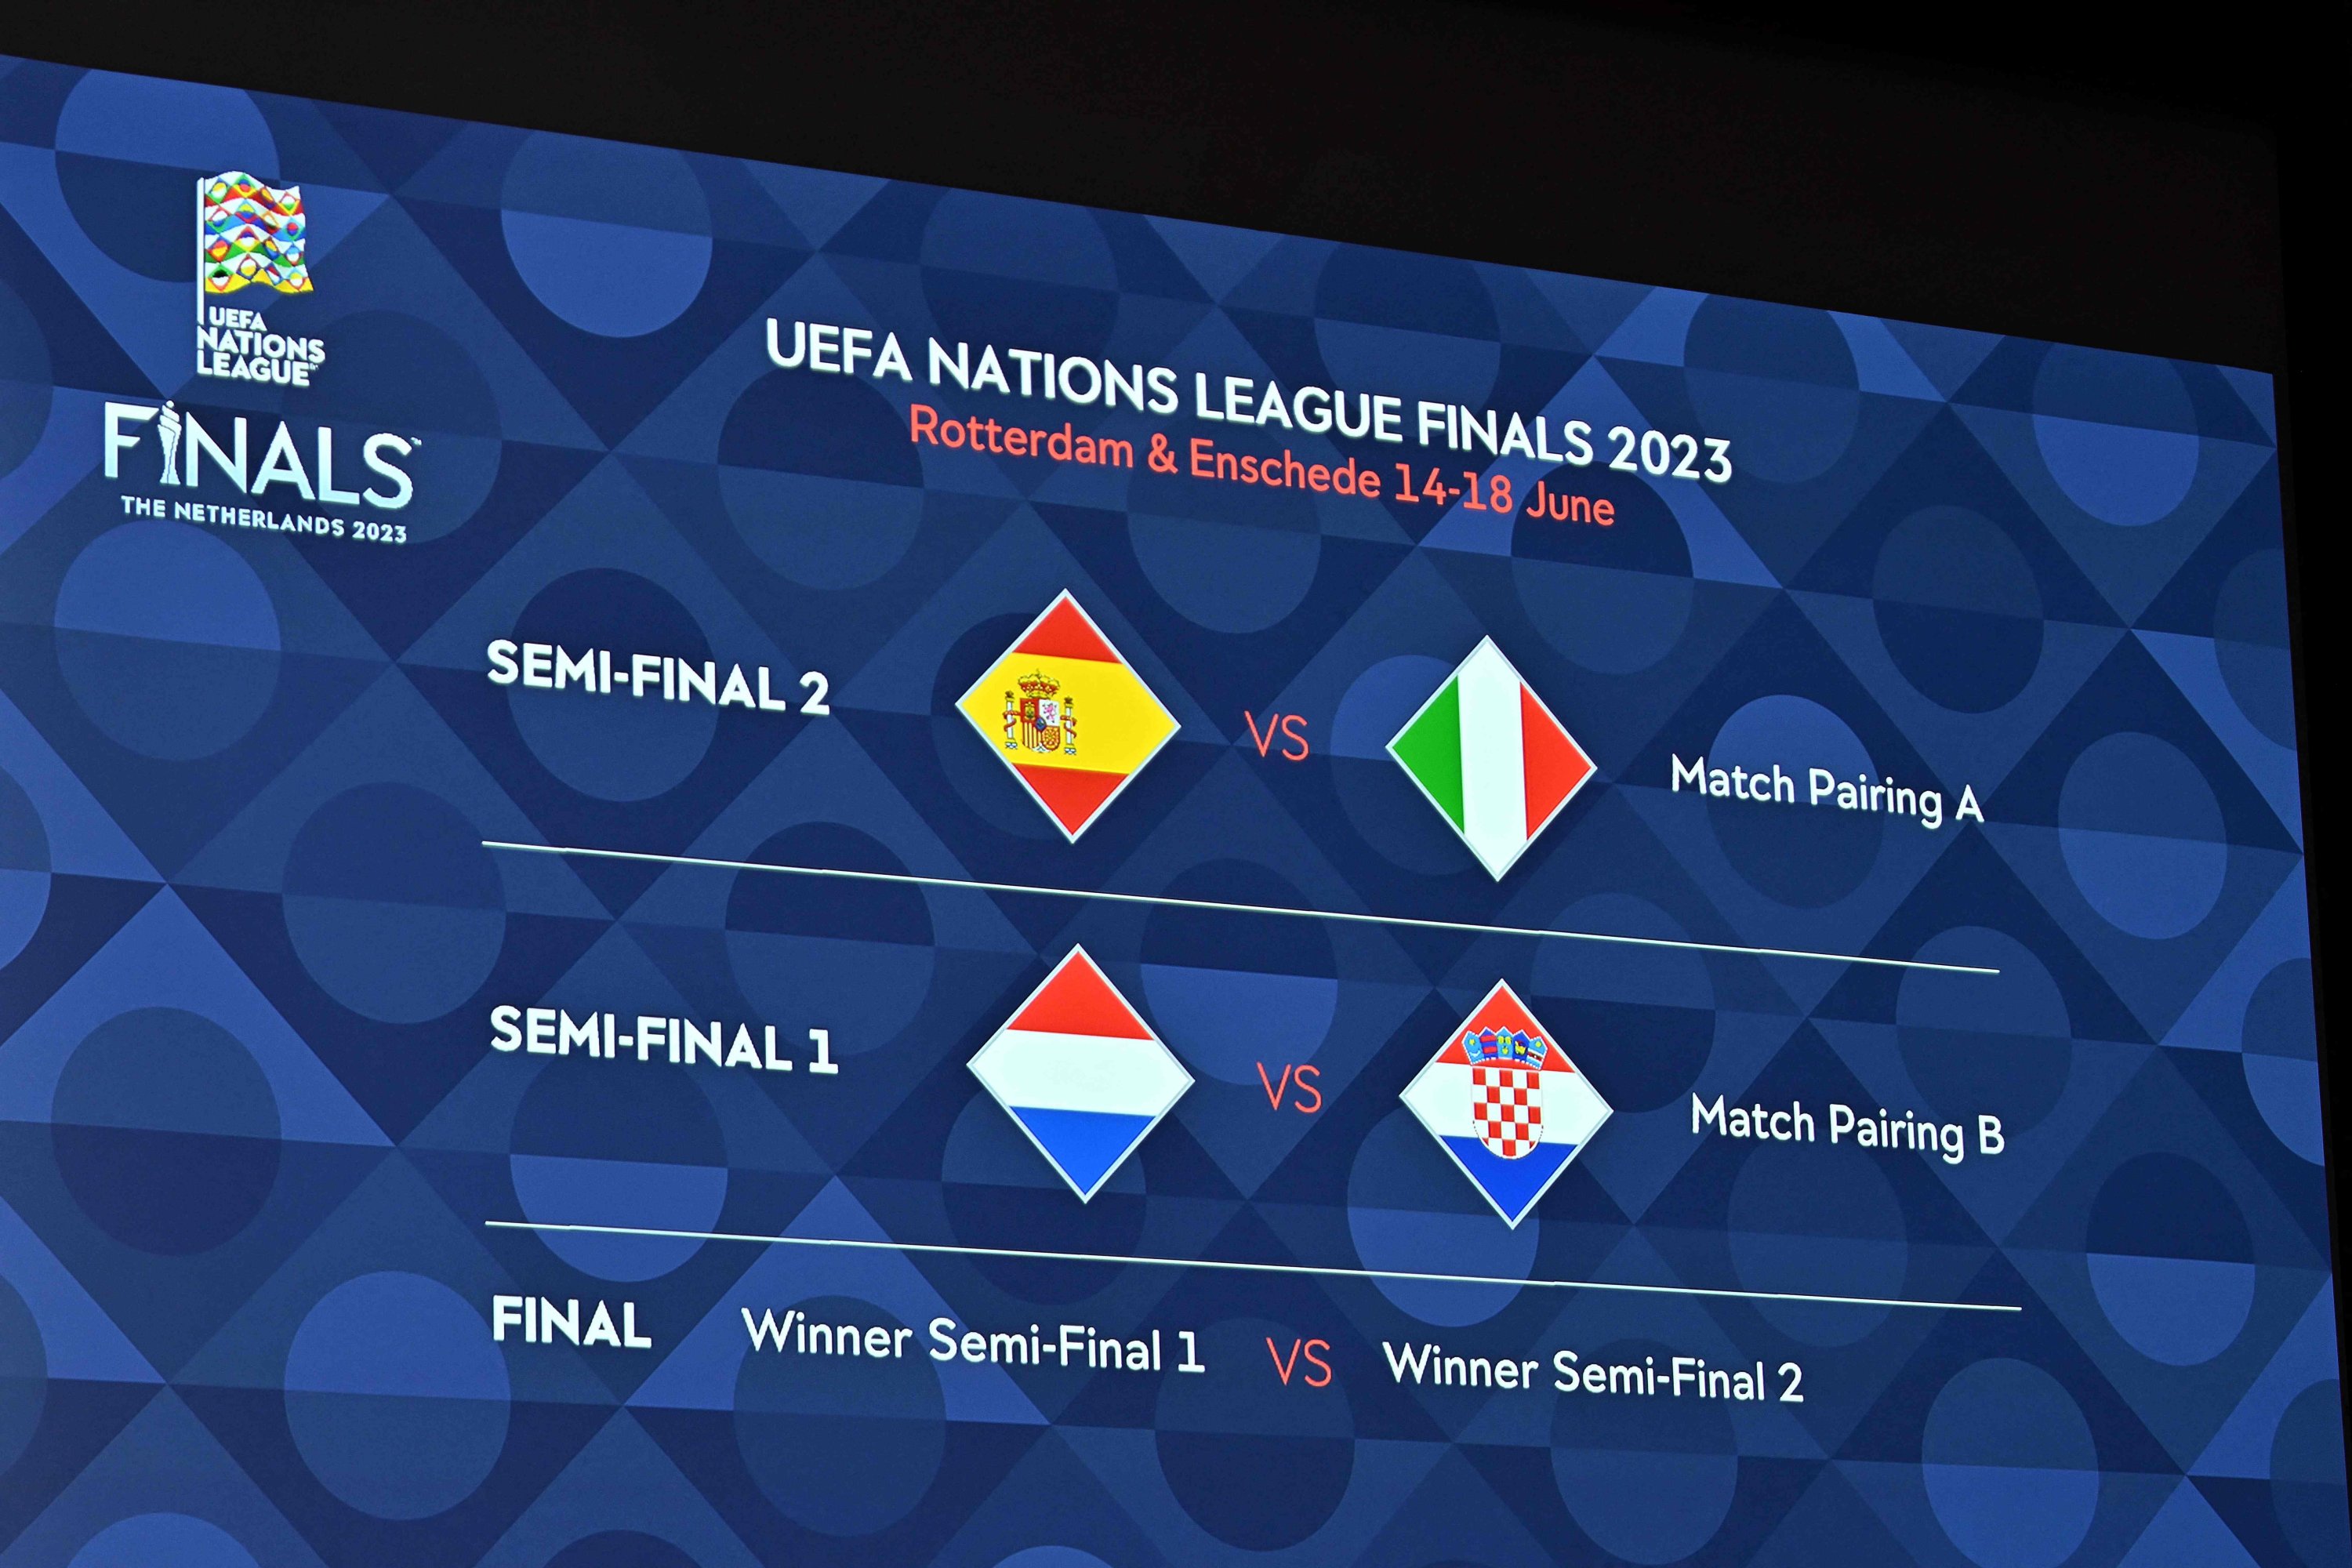 Hasil pengundian ditampilkan di papan selama pengundian final sepak bola UEFA Nations League 2023, Nyon, Swiss, 25 Januari 2023. (AFP Photo)